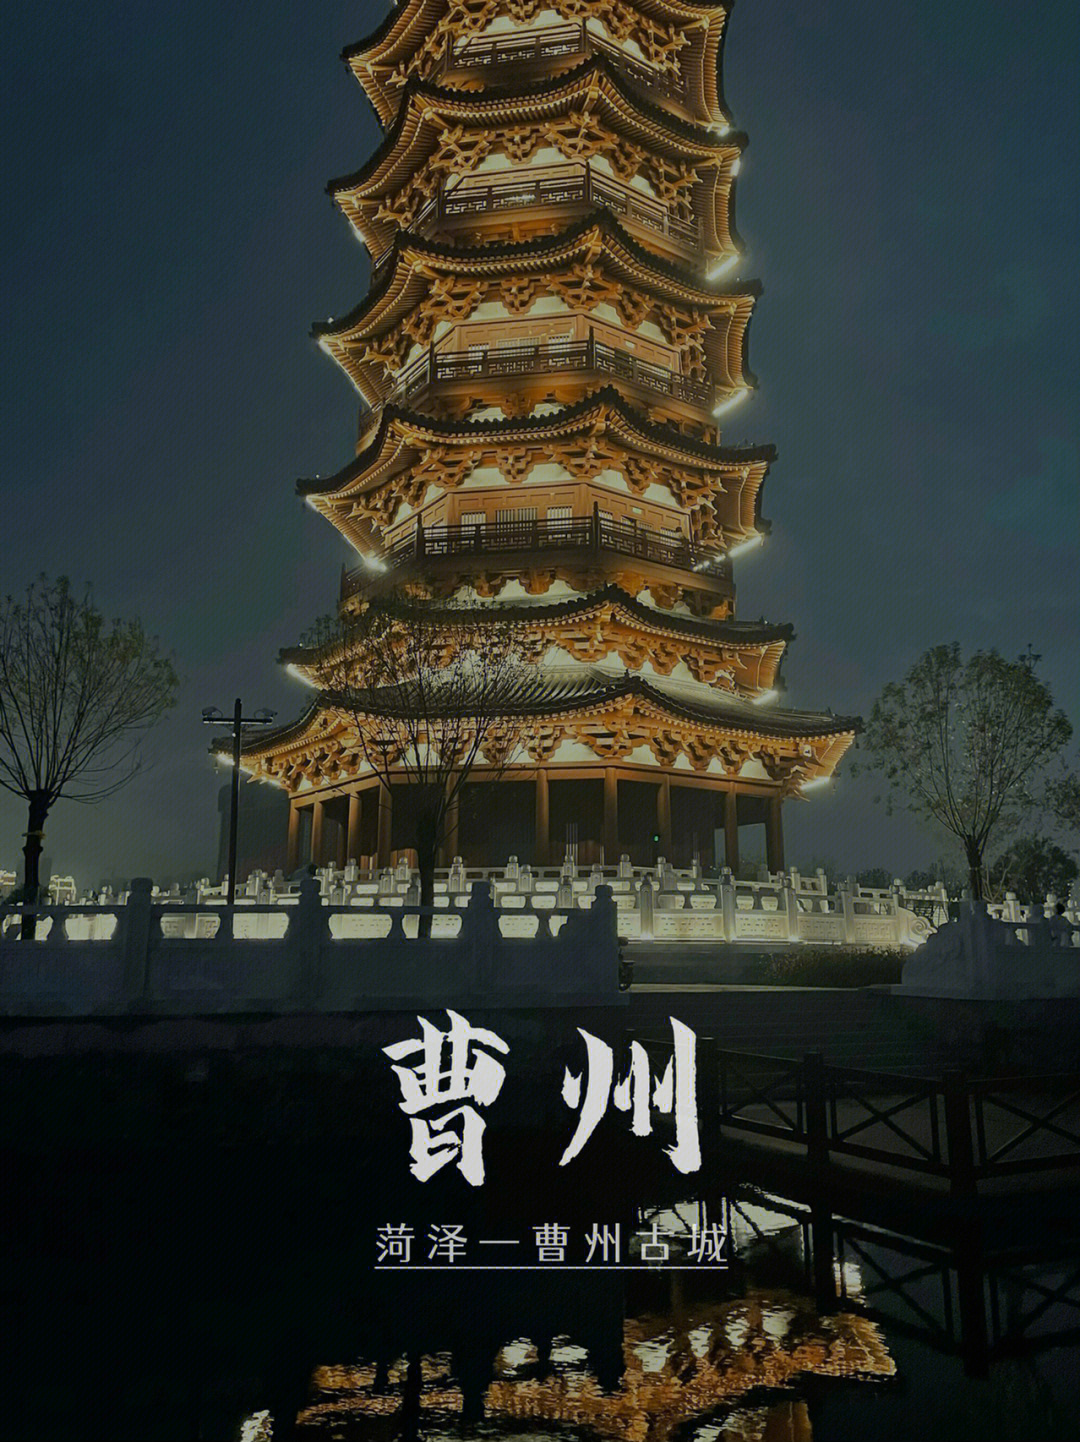 苏豫皖四省交界处,盛产牡丹,是中国牡丹之都95游玩的景点:曹州古城